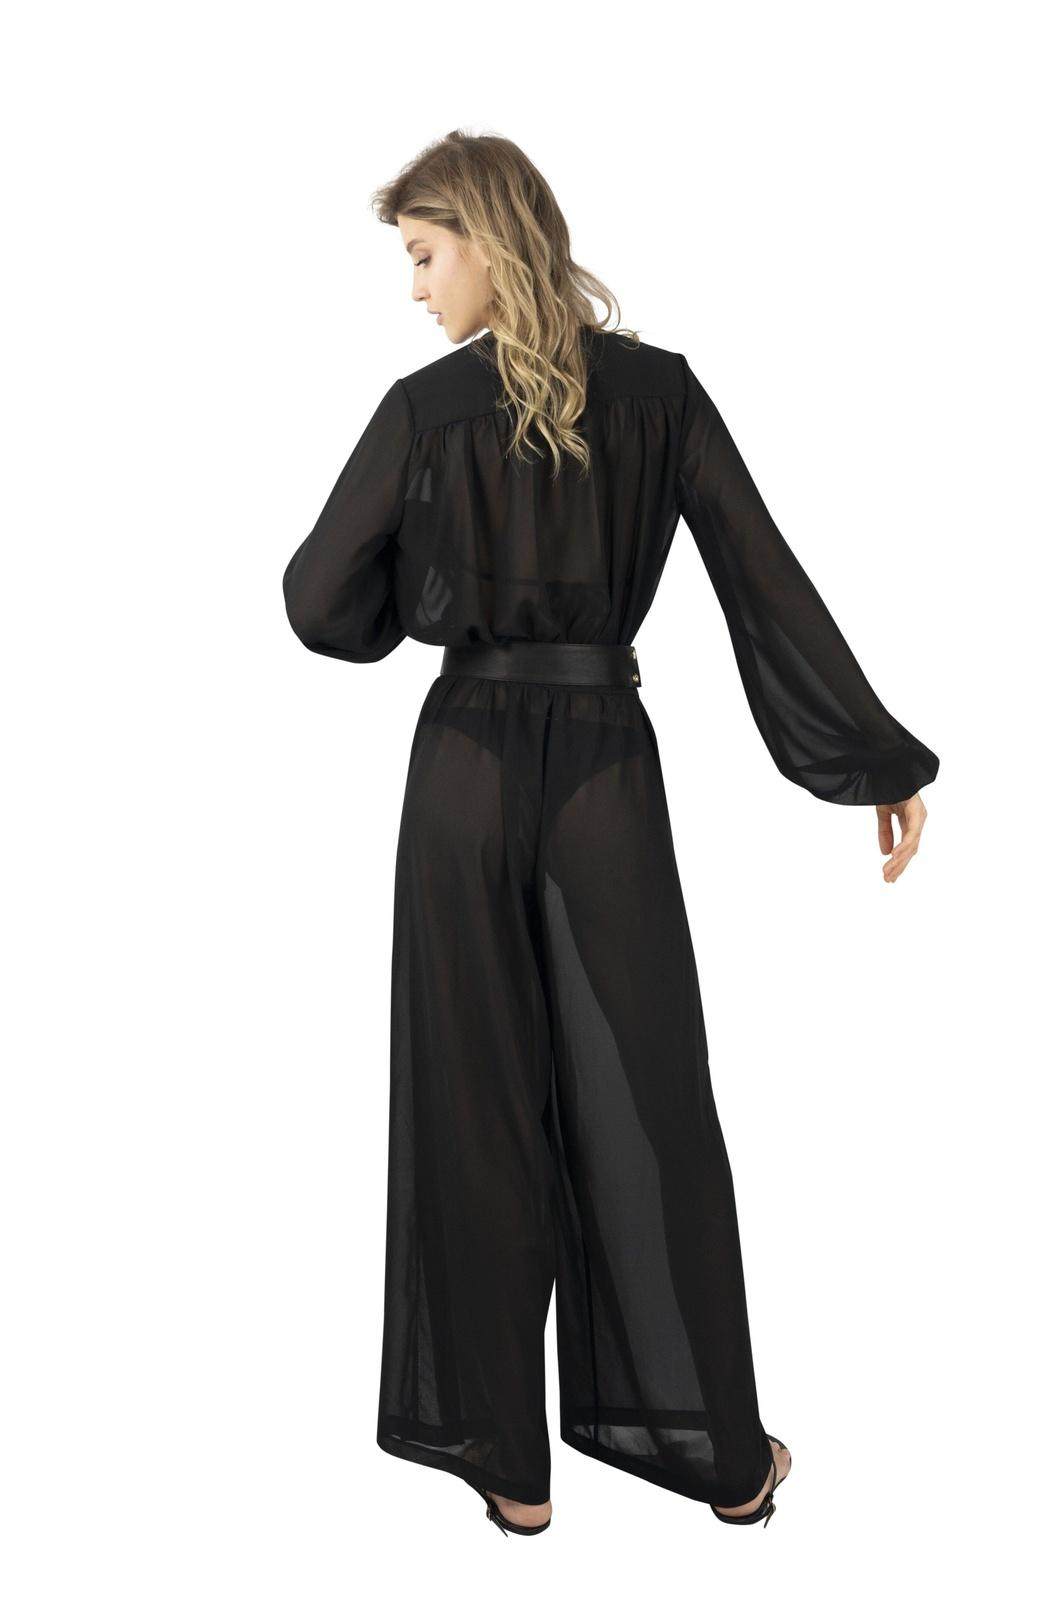 The Oasis Sheer Chiffon Jumpsuit in Noir Black From Love Khaos Resort Wear Brand.